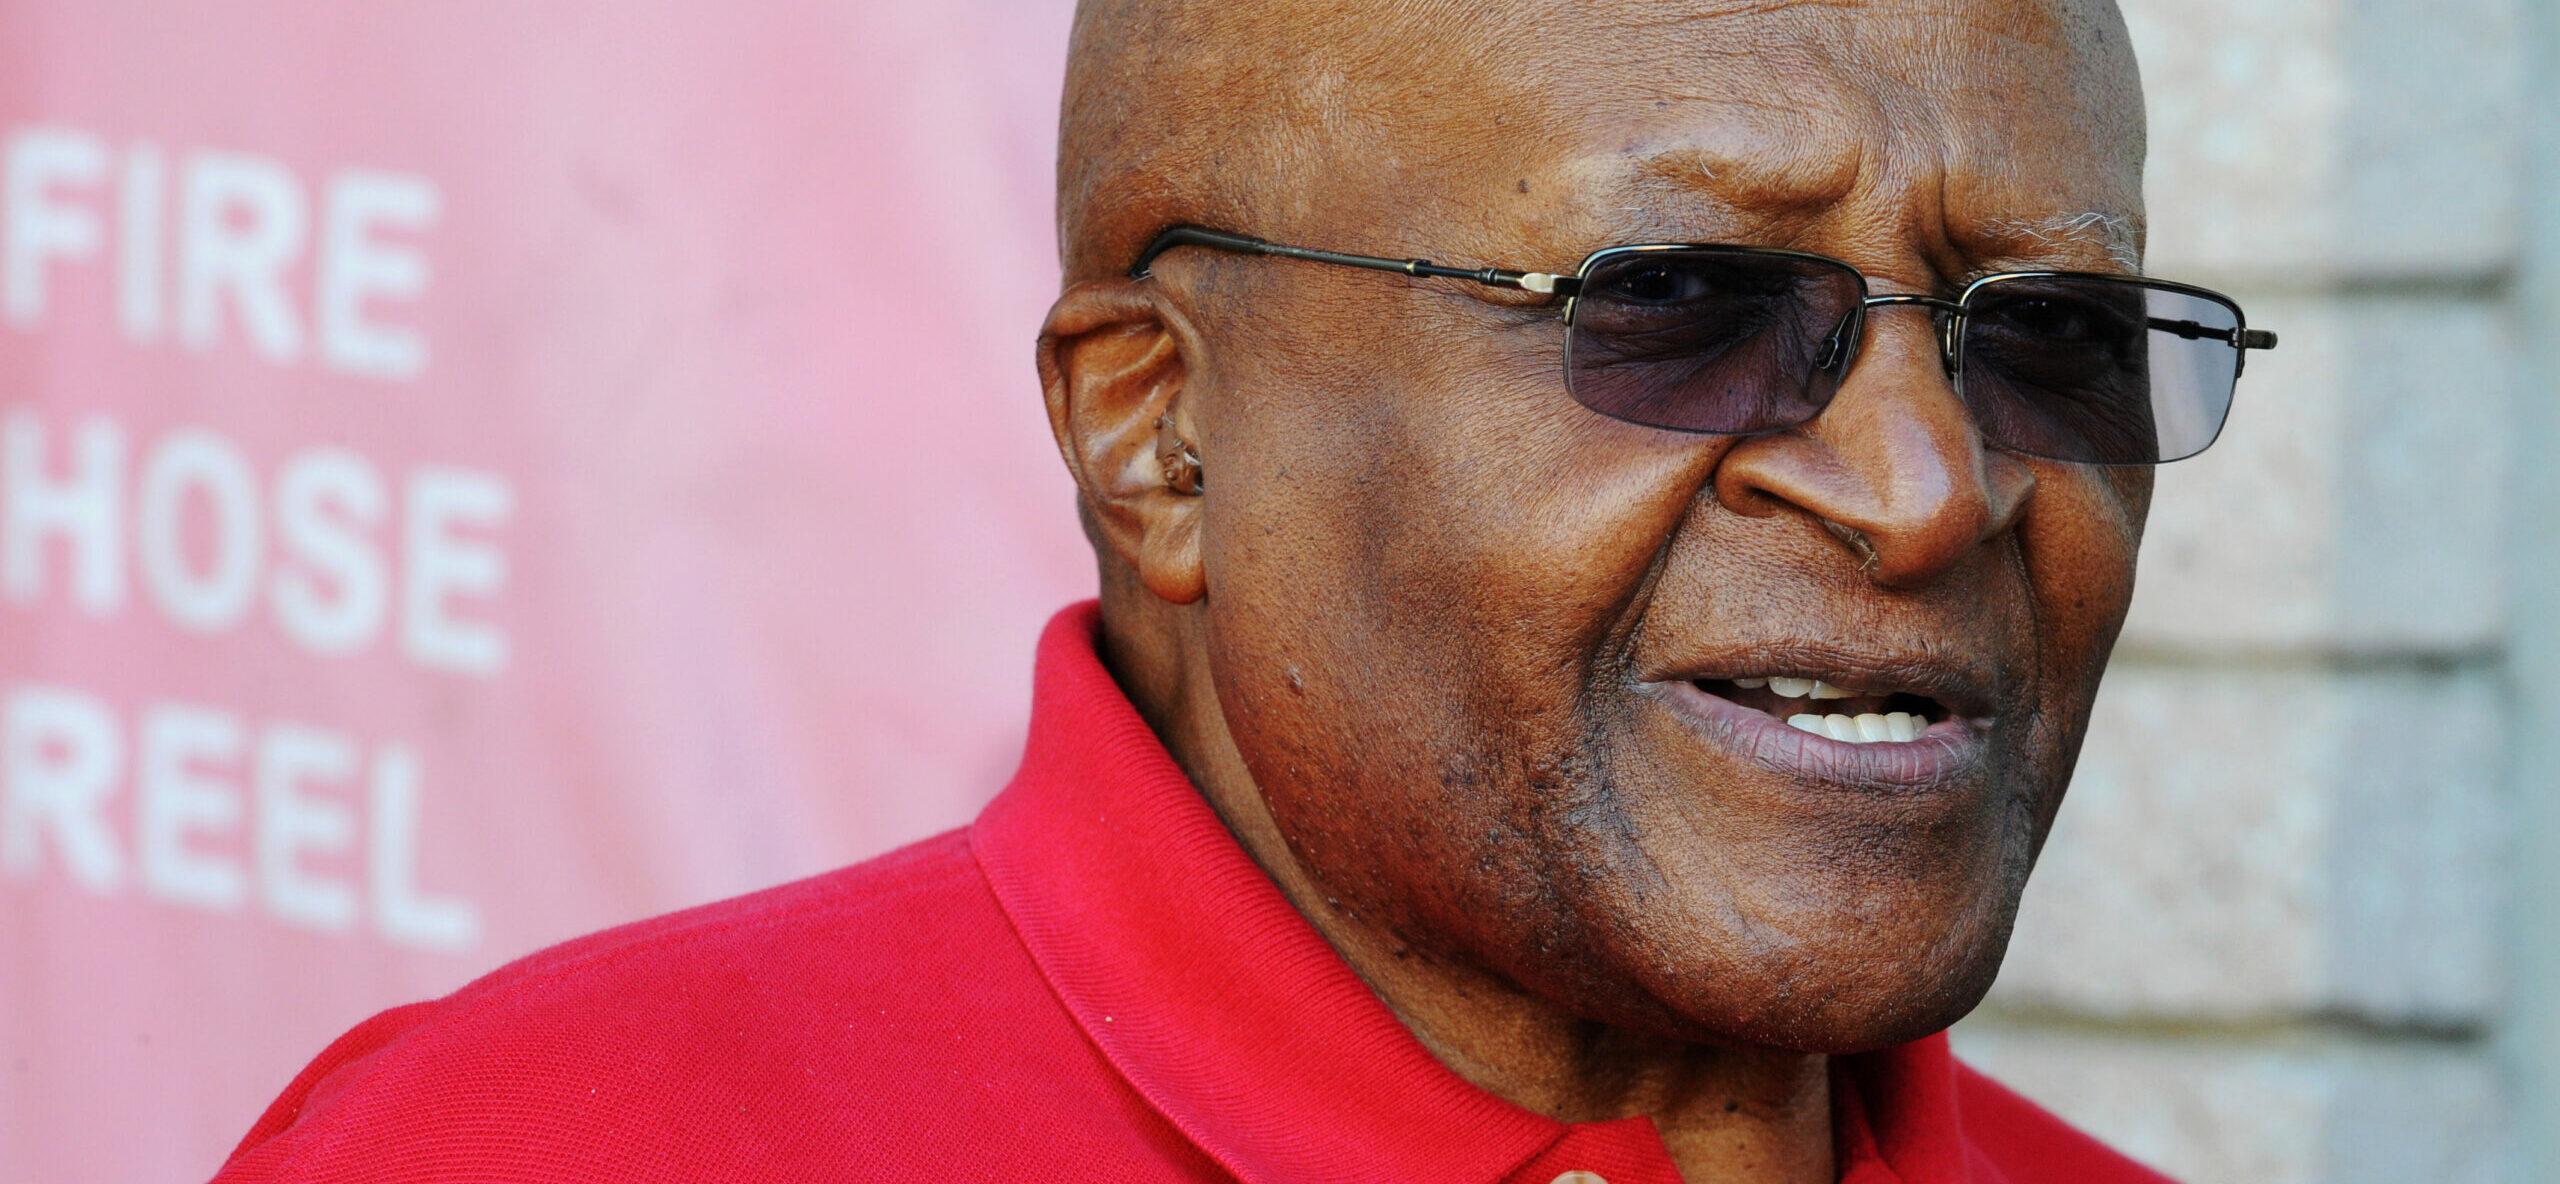 File pictures Desmond Tutu: South Africa anti-apartheid hero dies aged 90